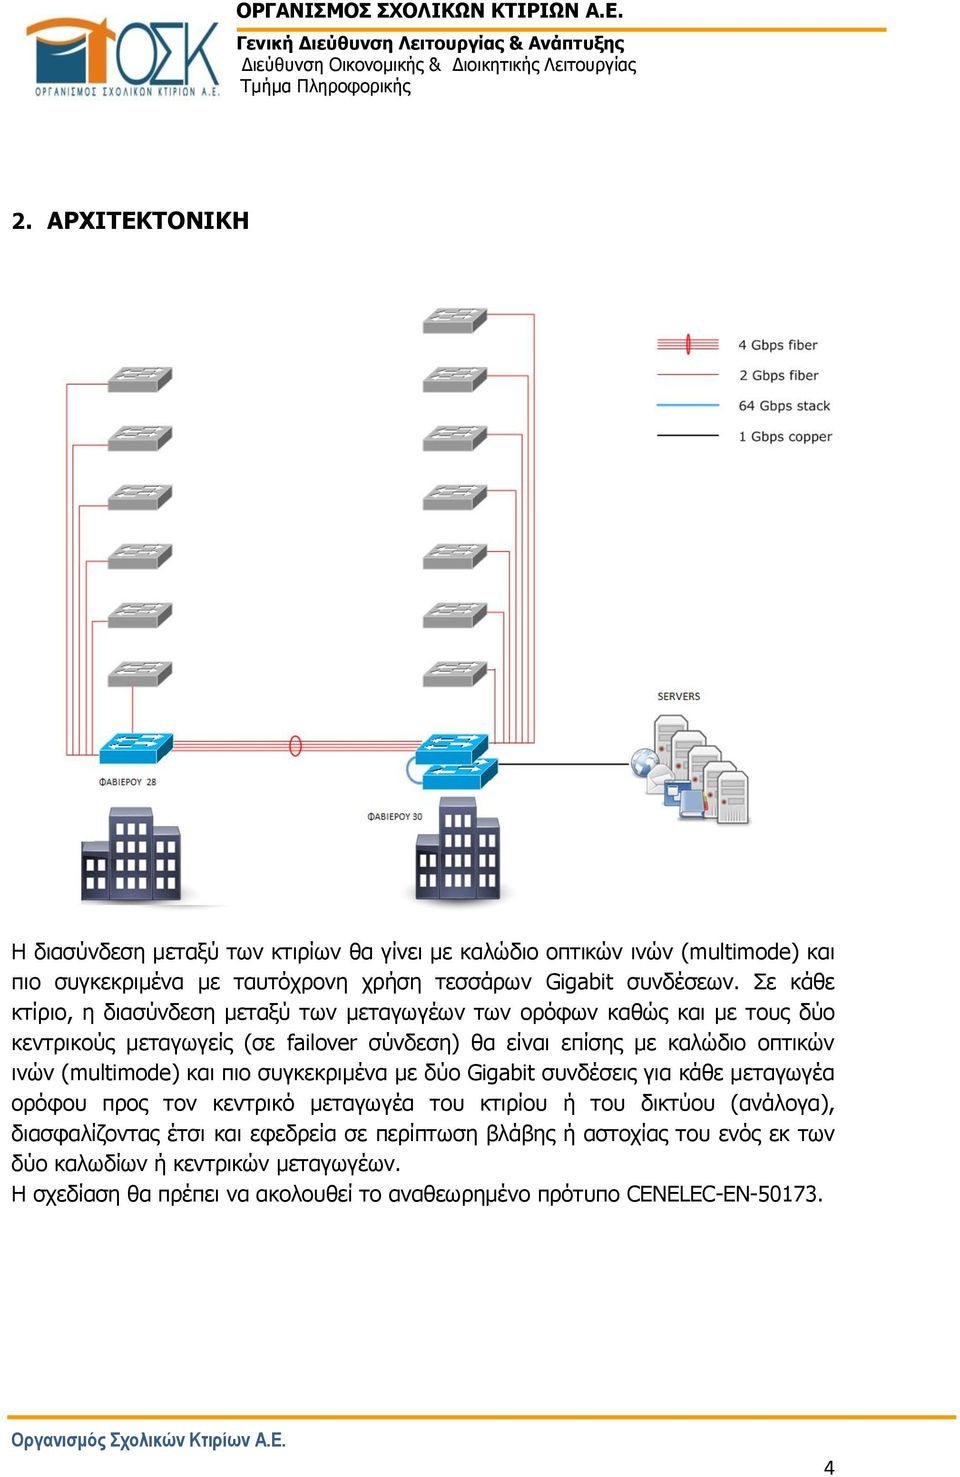 (multimode) και πιο συγκεκριμένα με δύο Gigabit συνδέσεις για κάθε μεταγωγέα ορόφου προς τον κεντρικό μεταγωγέα του κτιρίου ή του δικτύου (ανάλογα), διασφαλίζοντας έτσι